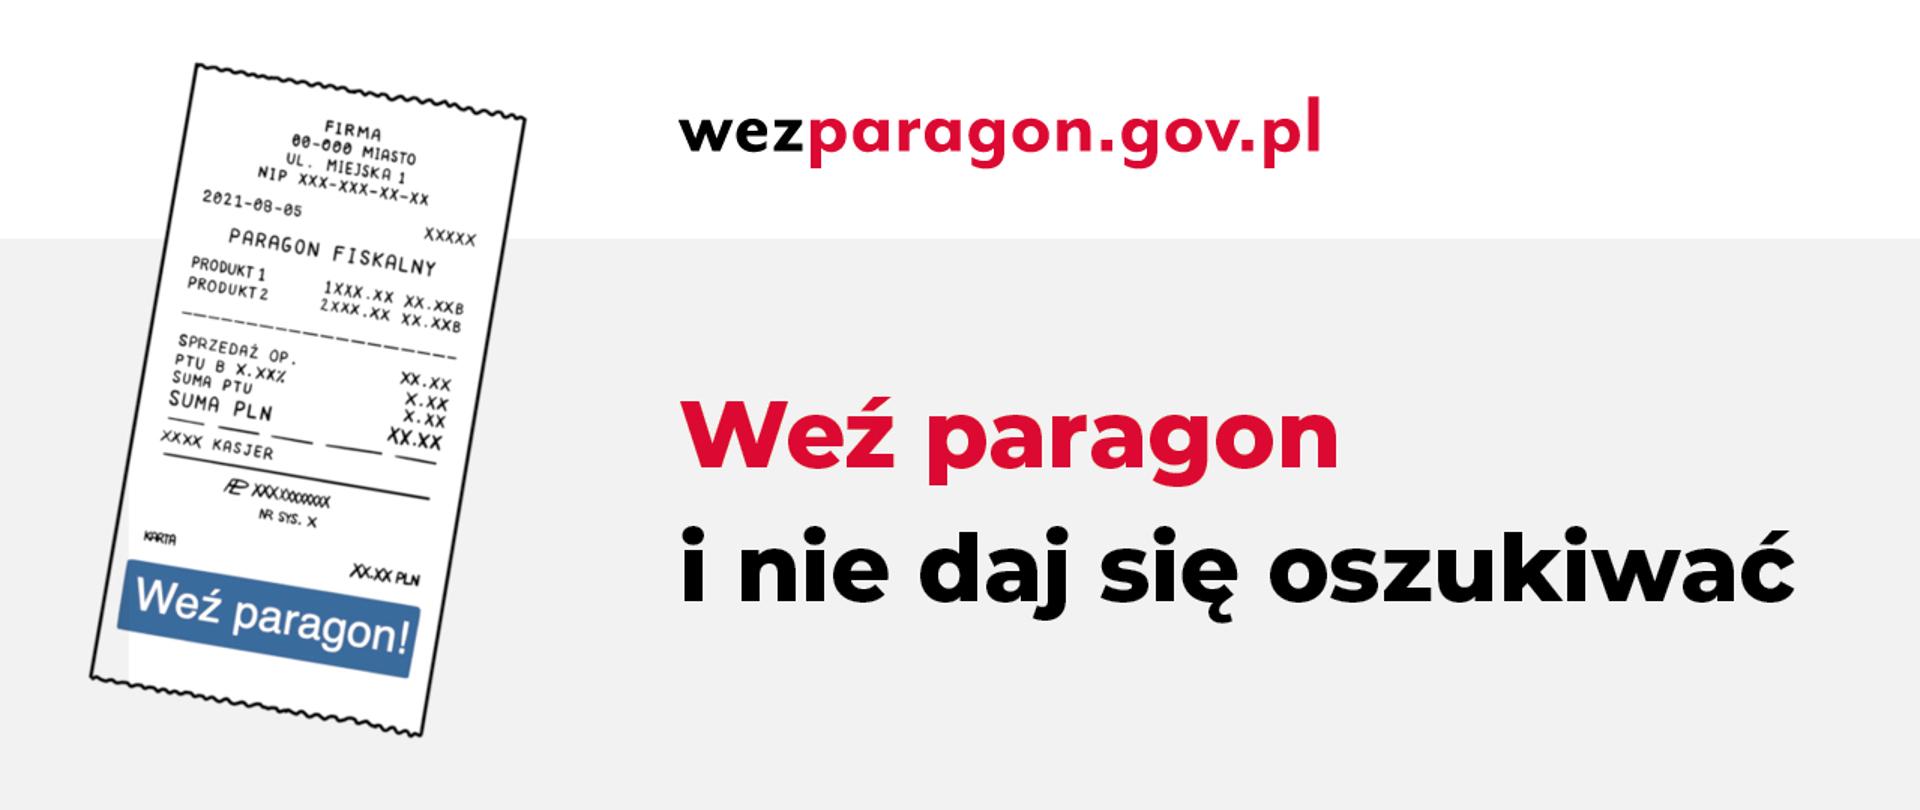 Po lewej stronie paragon a po prawej napis Weź paragon i nie daj się oszukiwać. Powyżej adres url wezparagon.gov.pl